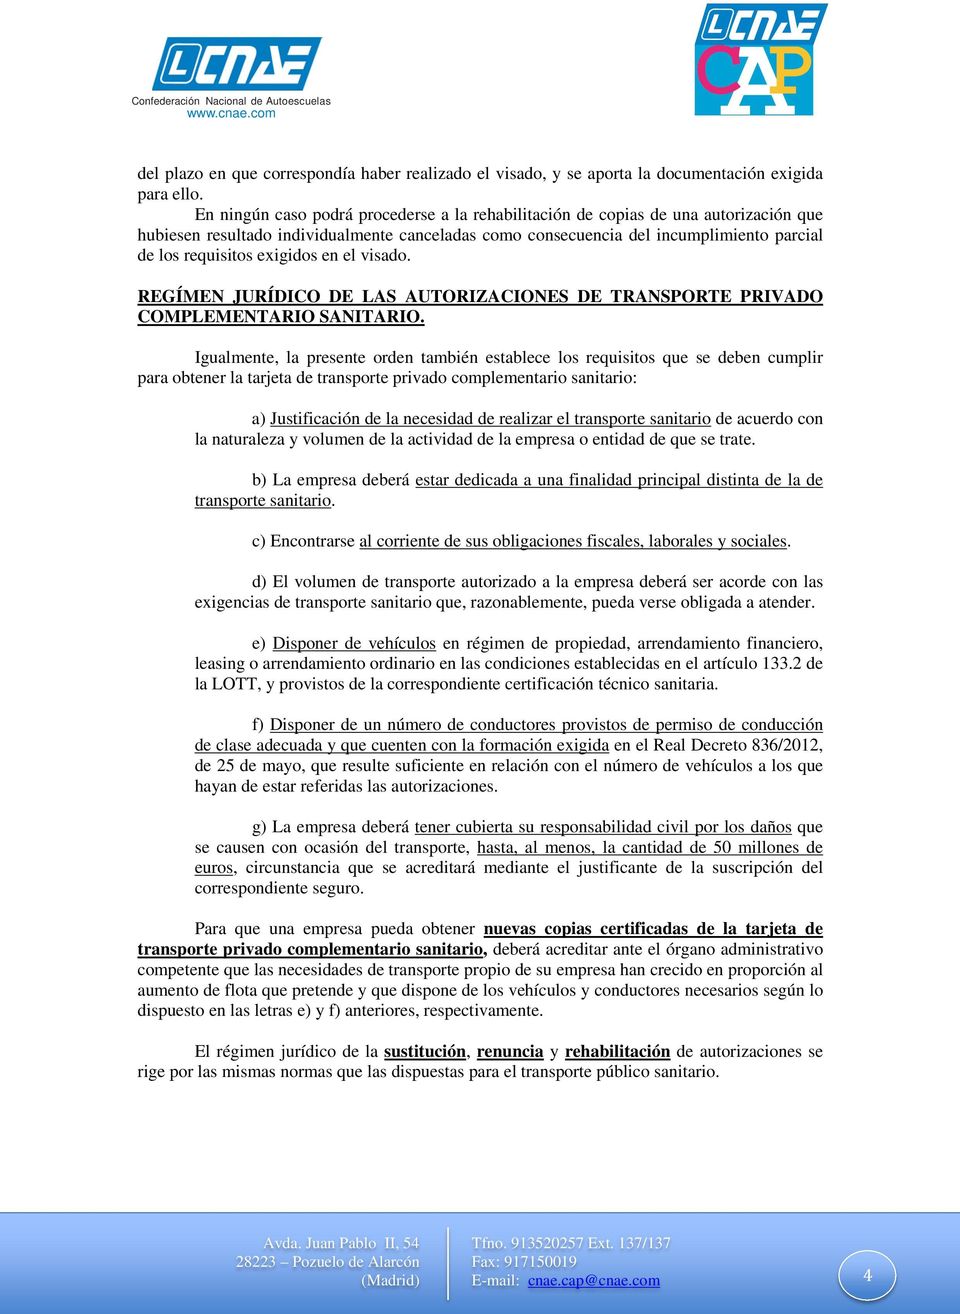 exigidos en el visado. REGÍMEN JURÍDICO DE LAS AUTORIZACIONES DE TRANSPORTE PRIVADO COMPLEMENTARIO SANITARIO.